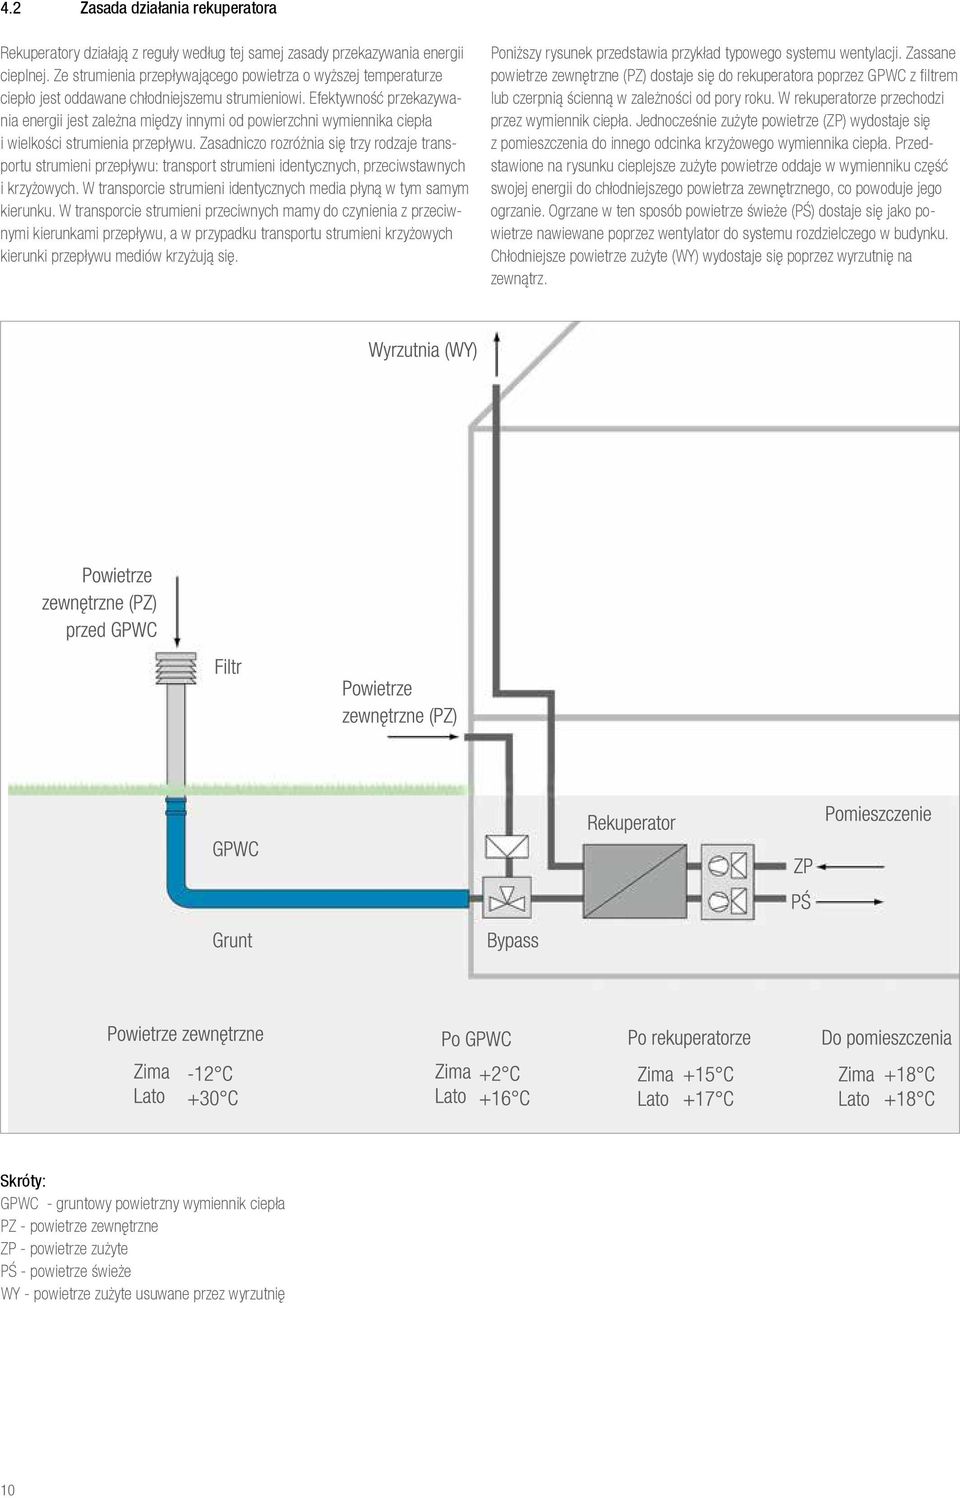 Efektywność przekazywania energii jest zależna między innymi od powierzchni wymiennika ciepła i wielkości strumienia przepływu.